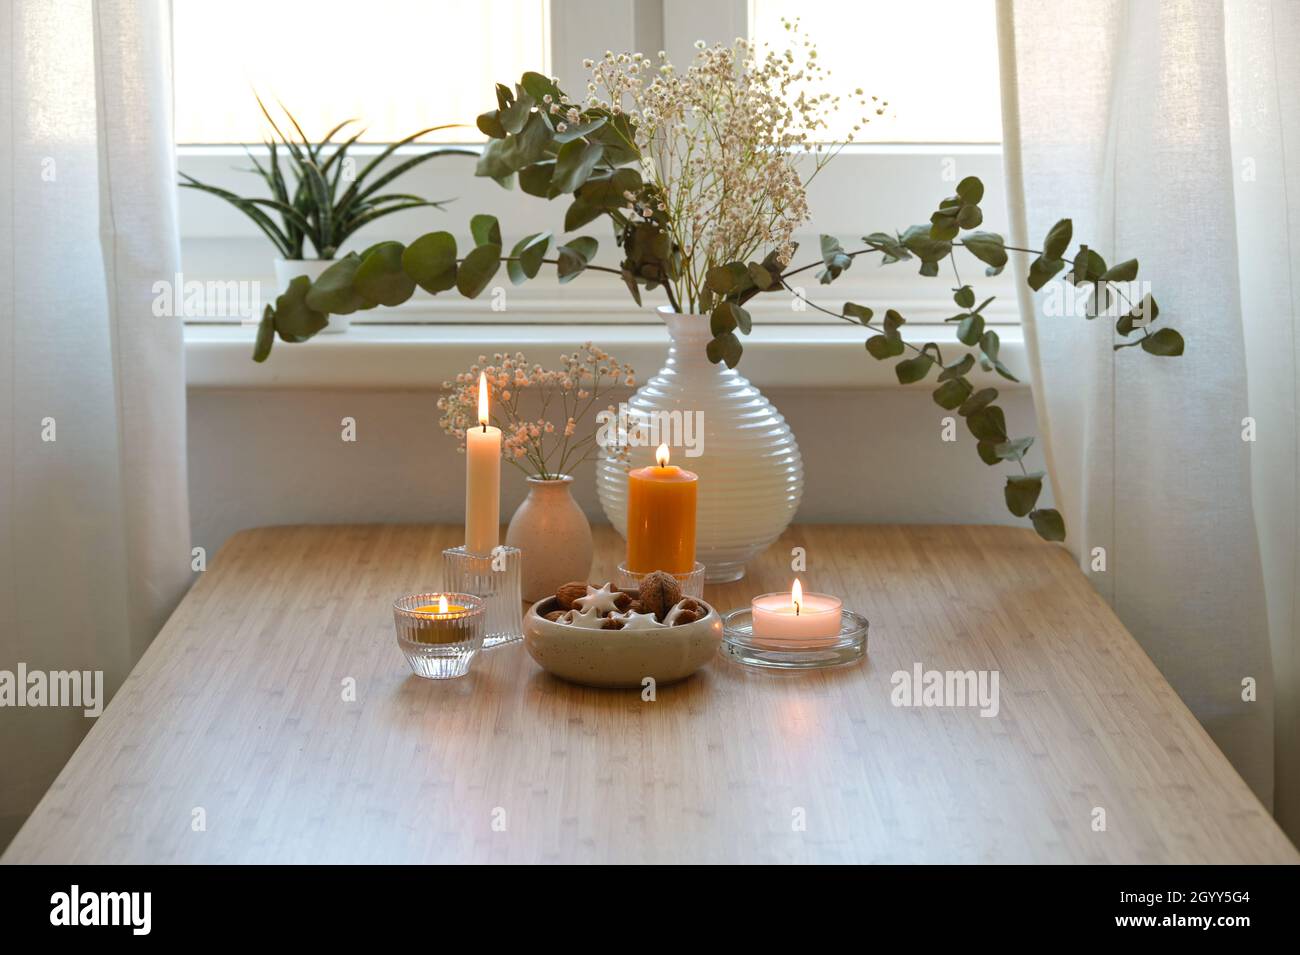 Quattro diverse candele dorate, vaso con rami di eucalipto e una ciotola con biscotti, decorazione festiva per l'Avvento e Natale su un legno Foto Stock